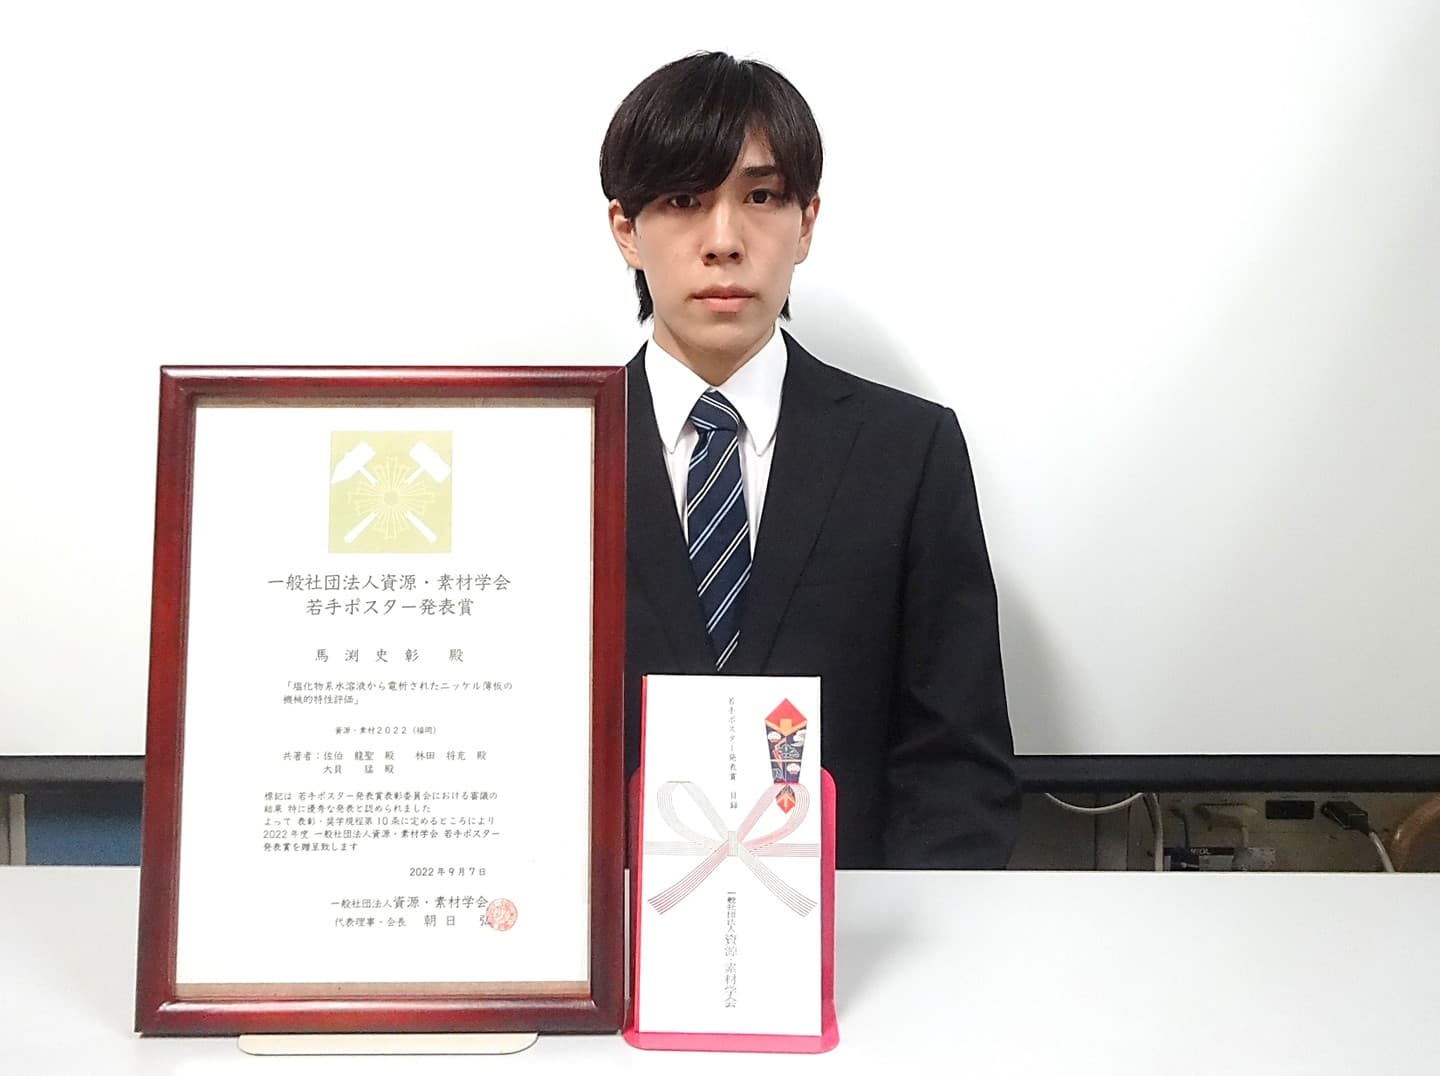 馬渕史彰君(M2)が、資源・素材関係学協会合同秋季大会において、若手ポスター発表賞を受賞しました。2022/09/07